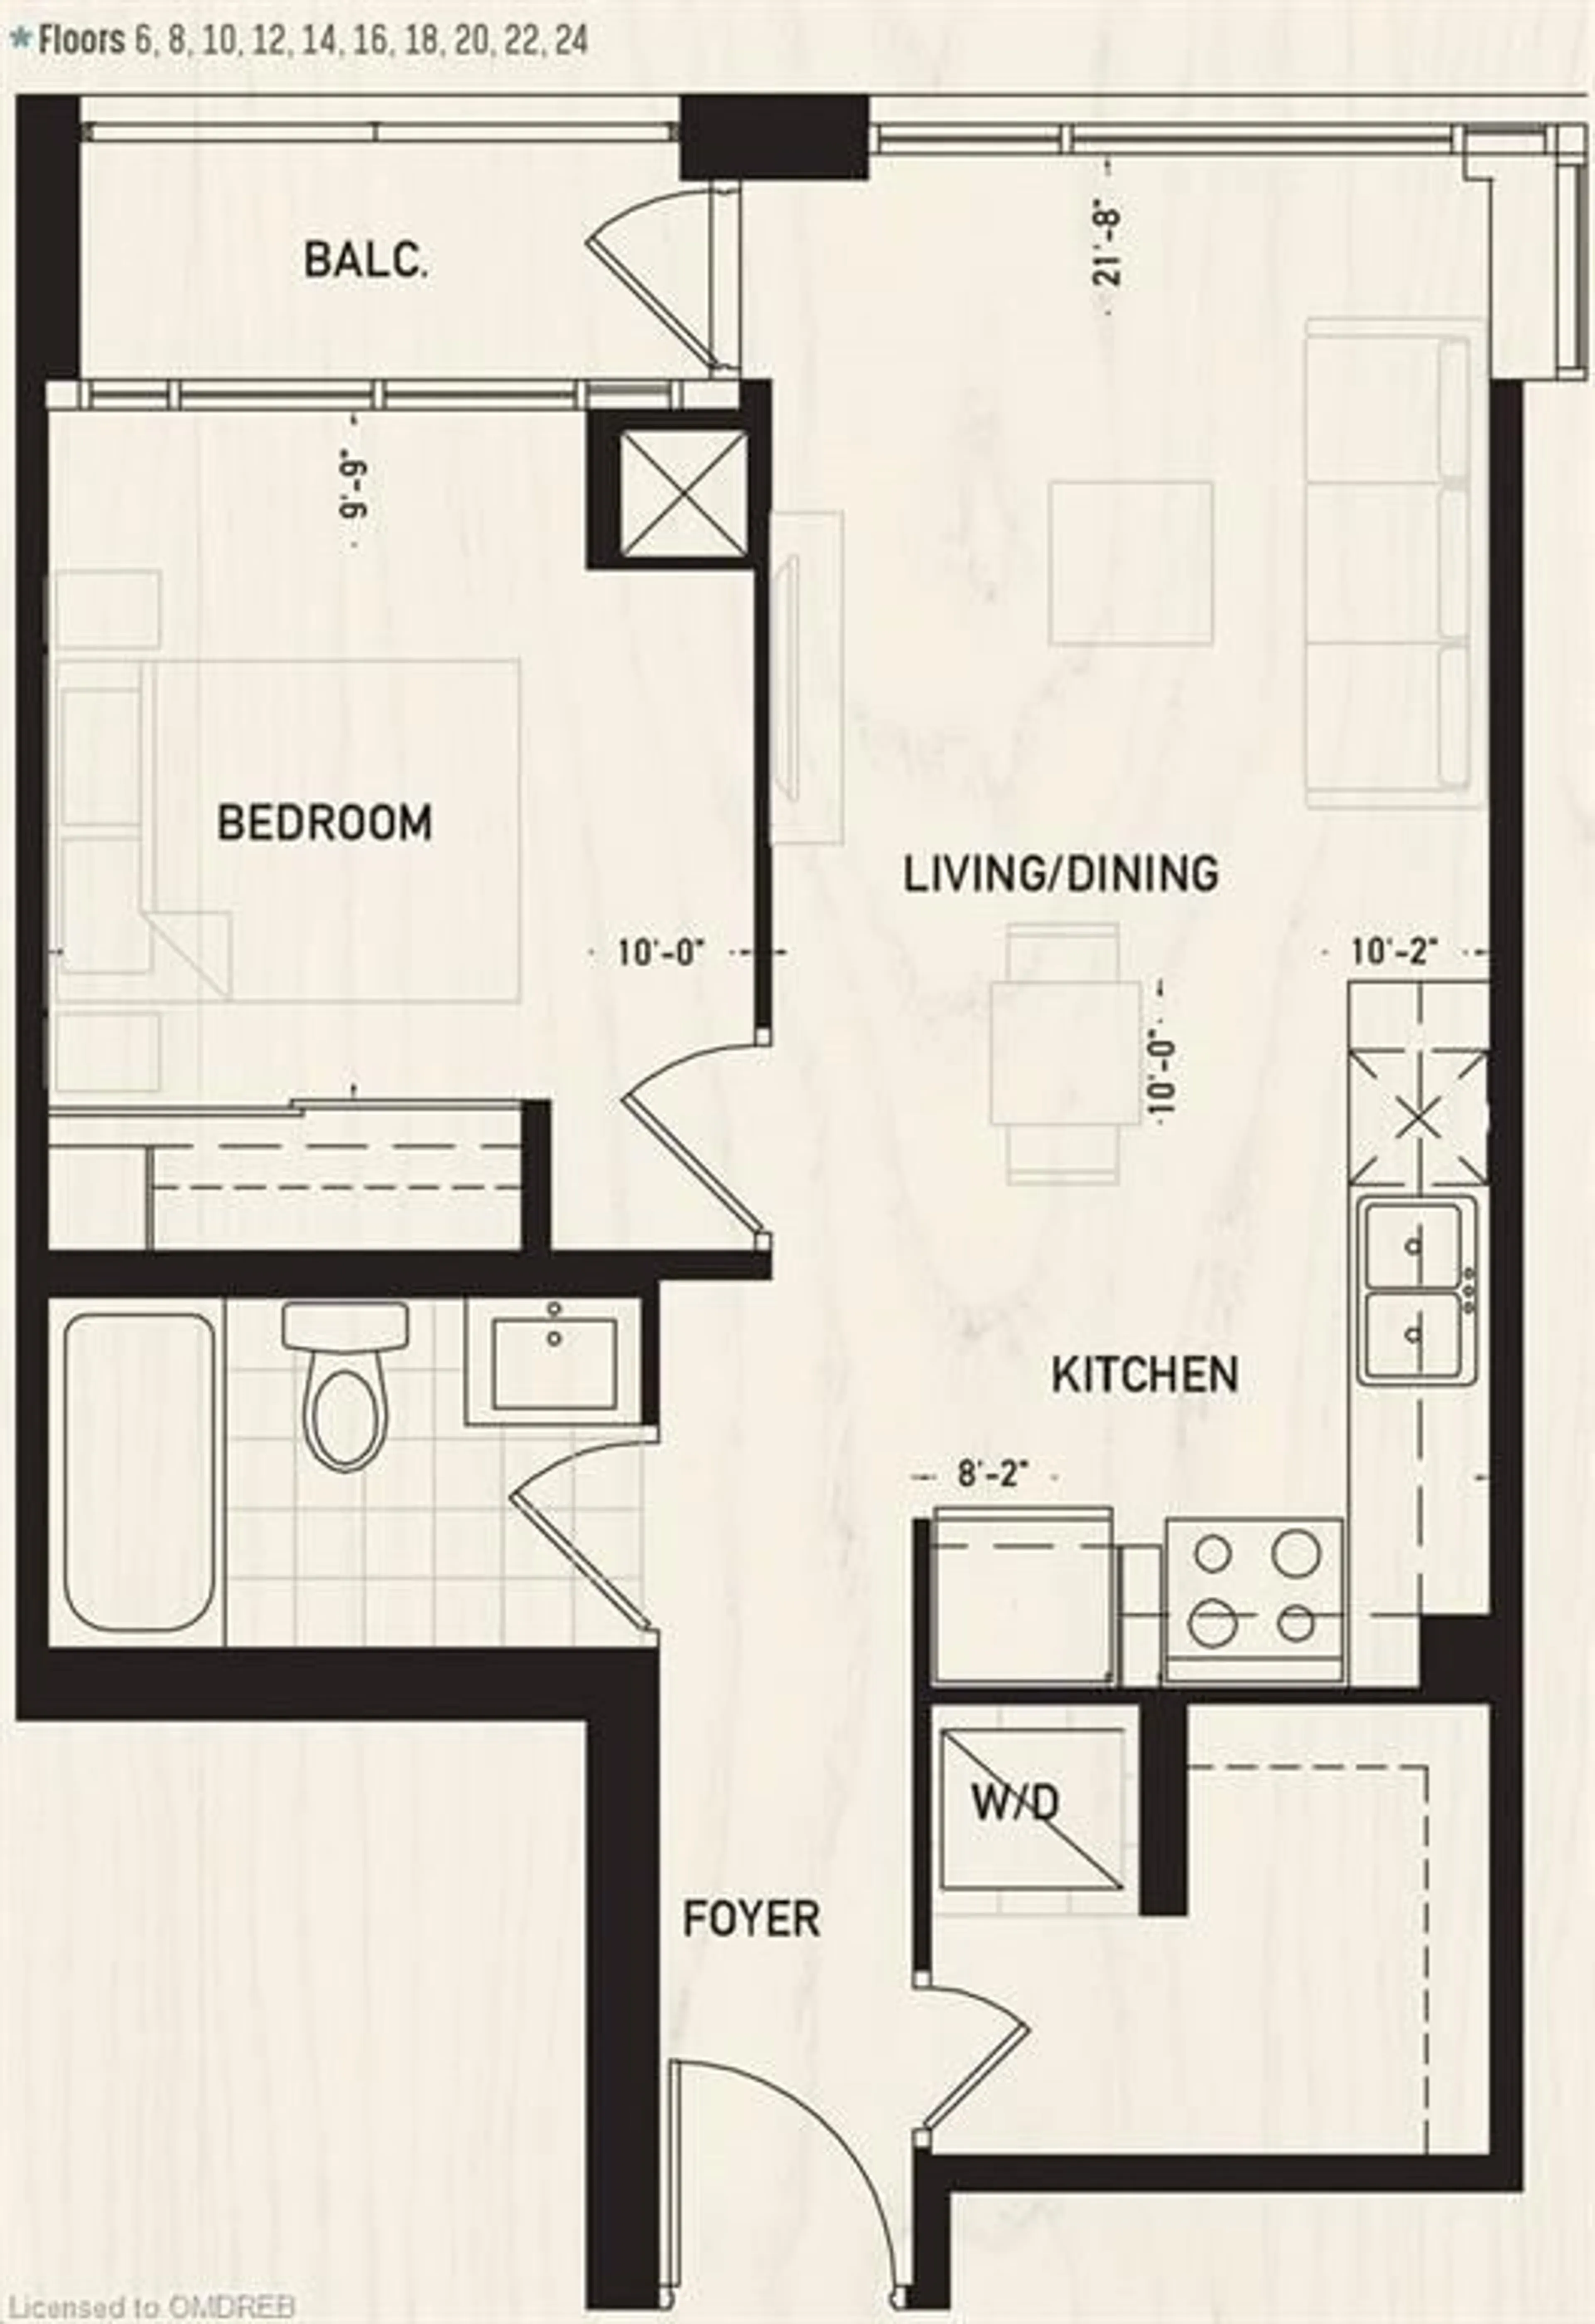 Floor plan for 297 Oak Walk Dr #2201, Oakville Ontario L6H 3R6